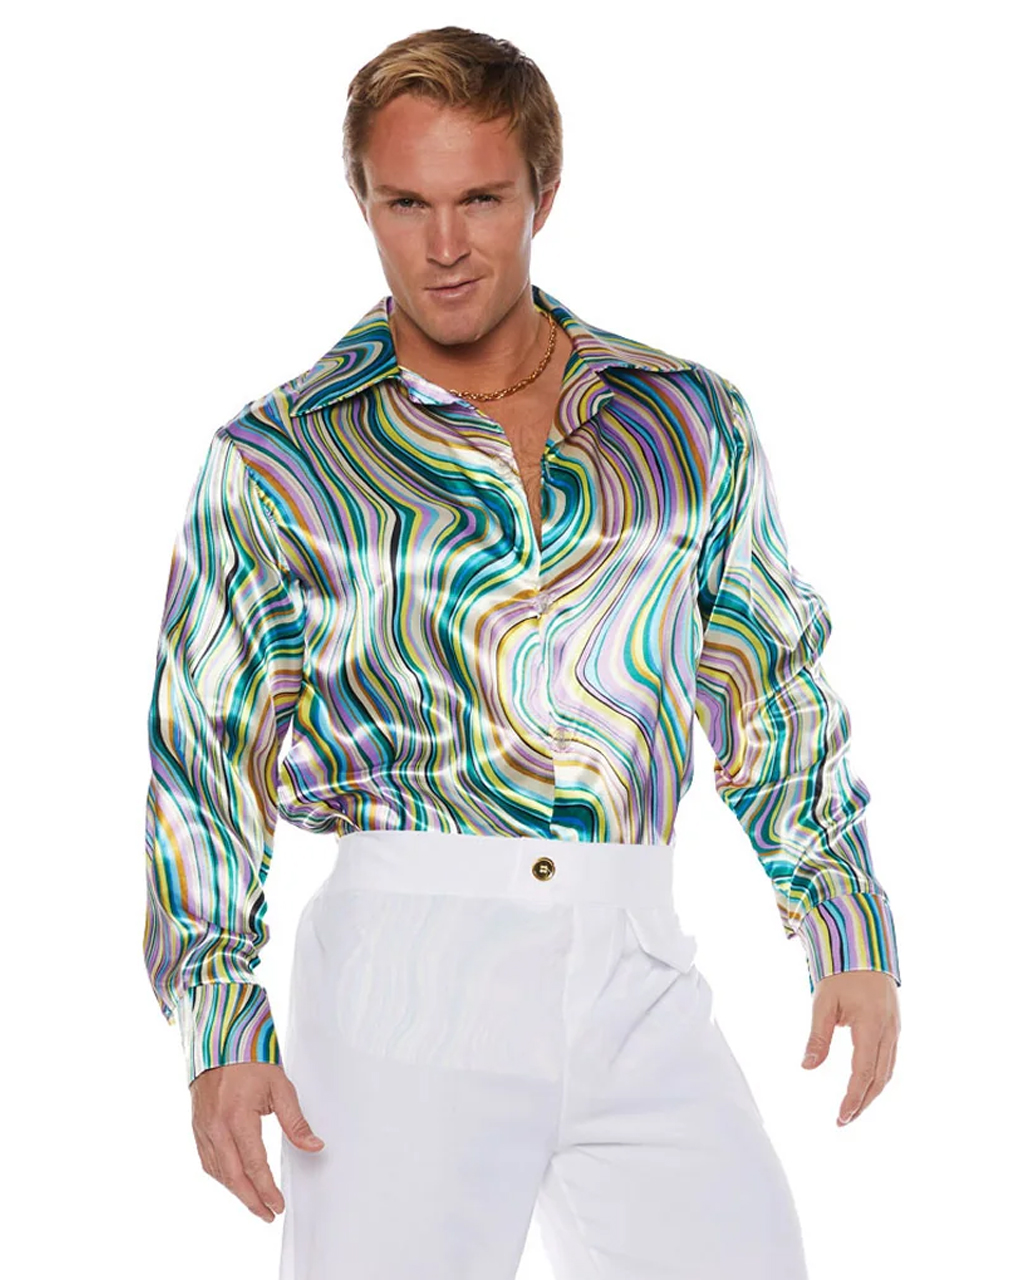 70er jahre disco hemd mit swirls faschingskostueme und zuebehoer disco shirt 52161 2